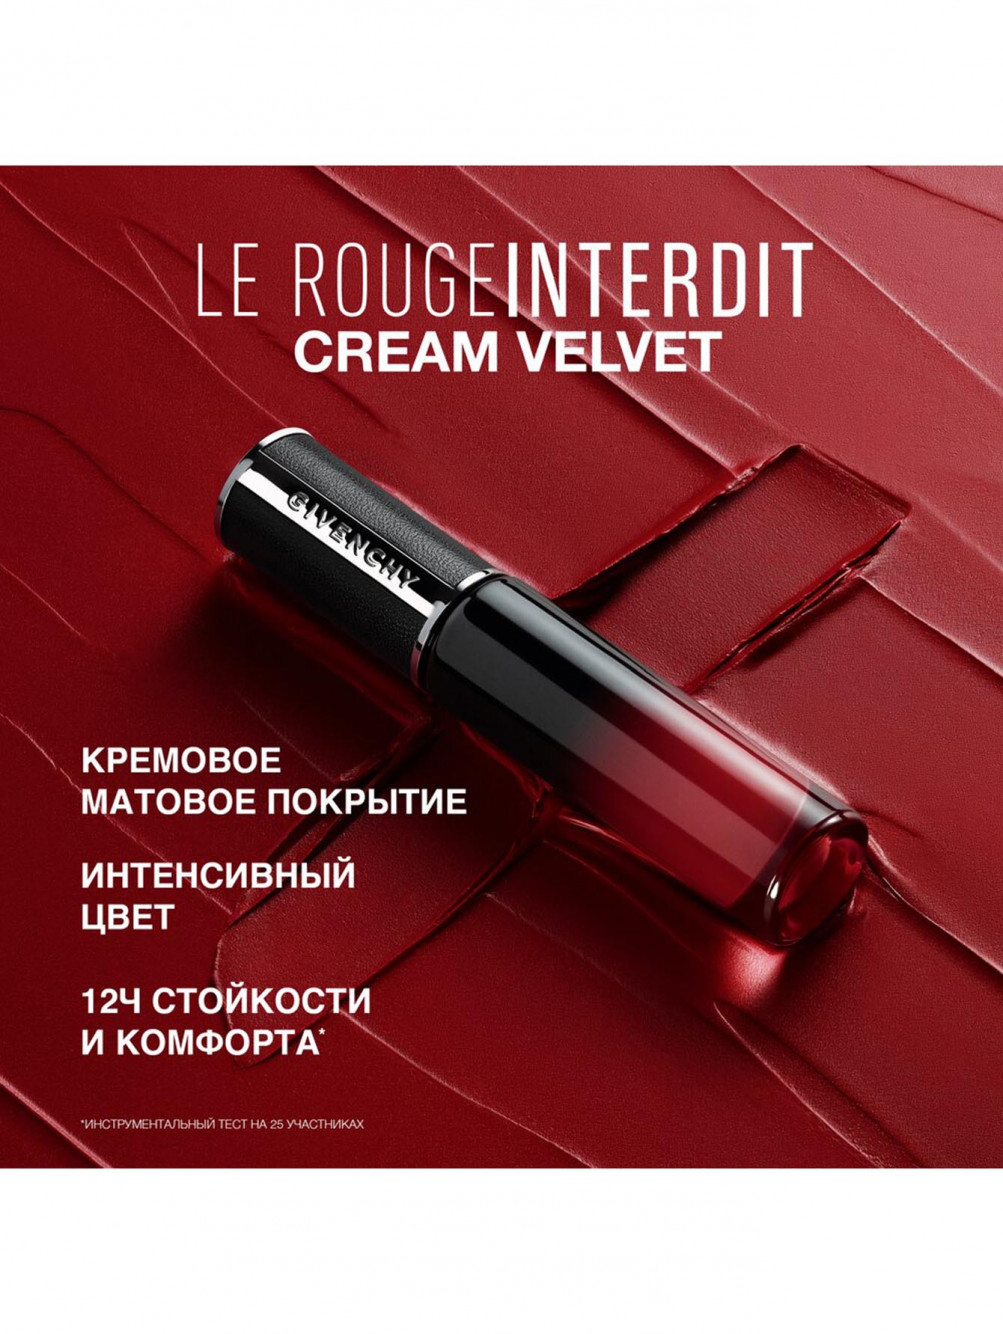 Жидкая матовая помада для губ Le Rouge Interdit Cream Velvet, оттенок 41, 6,5 мл - Обтравка4